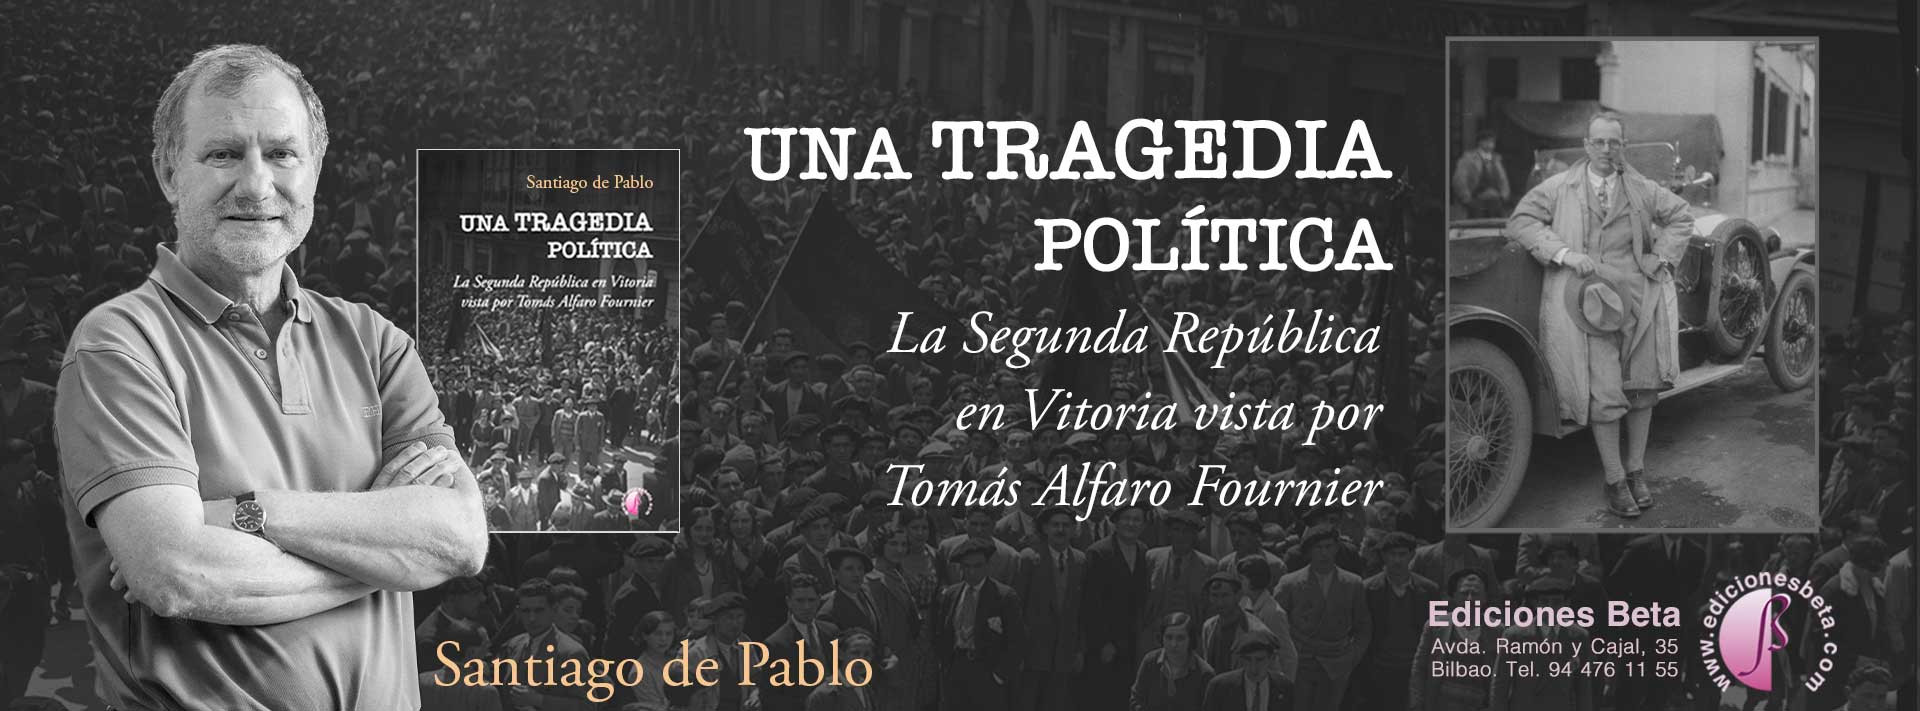 Una tragedia política. La Segunda República en Vitoria vista por Tomás Alfaro Fournier, de Santiago de Pablo